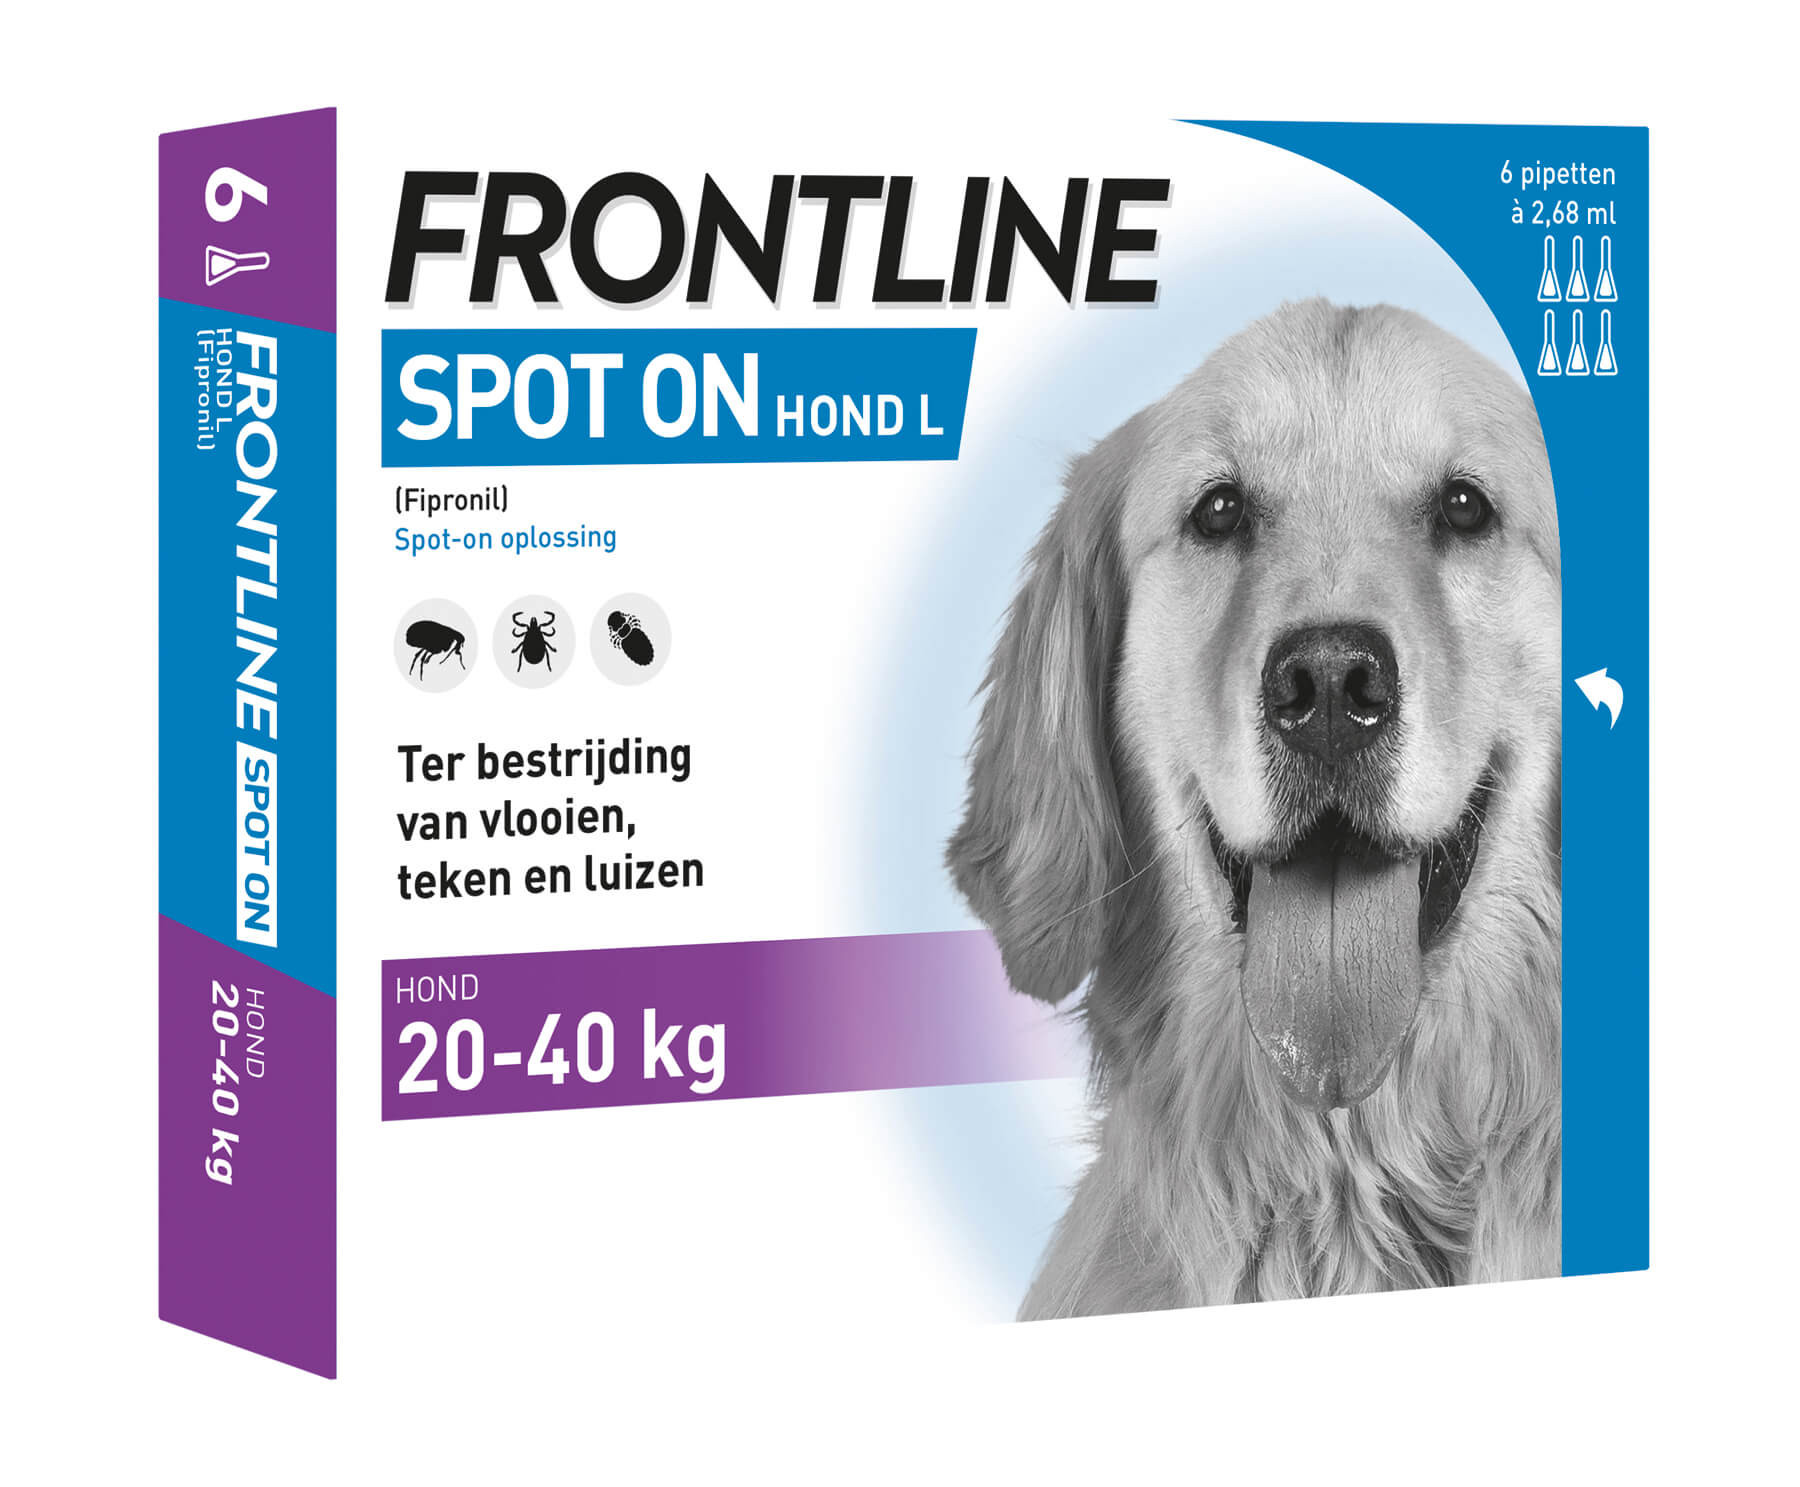 Frontline Spot on Hond L 6 pipetten